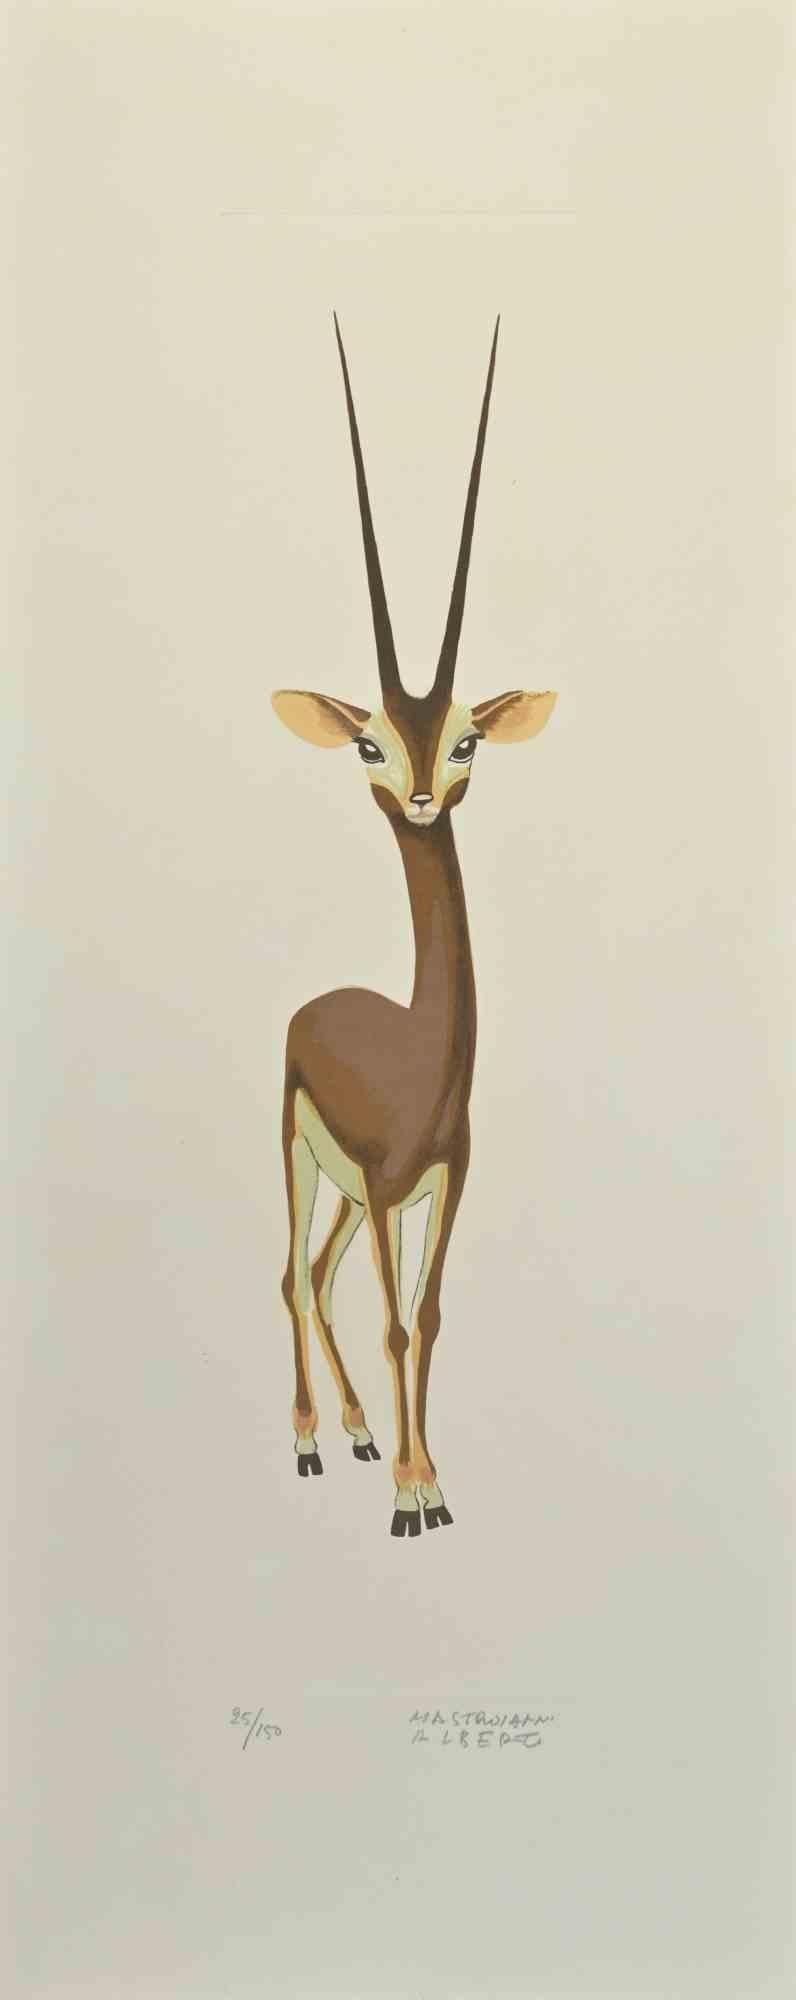 Gazelle - Lithograph by Alberto Mastroianni - 1970s